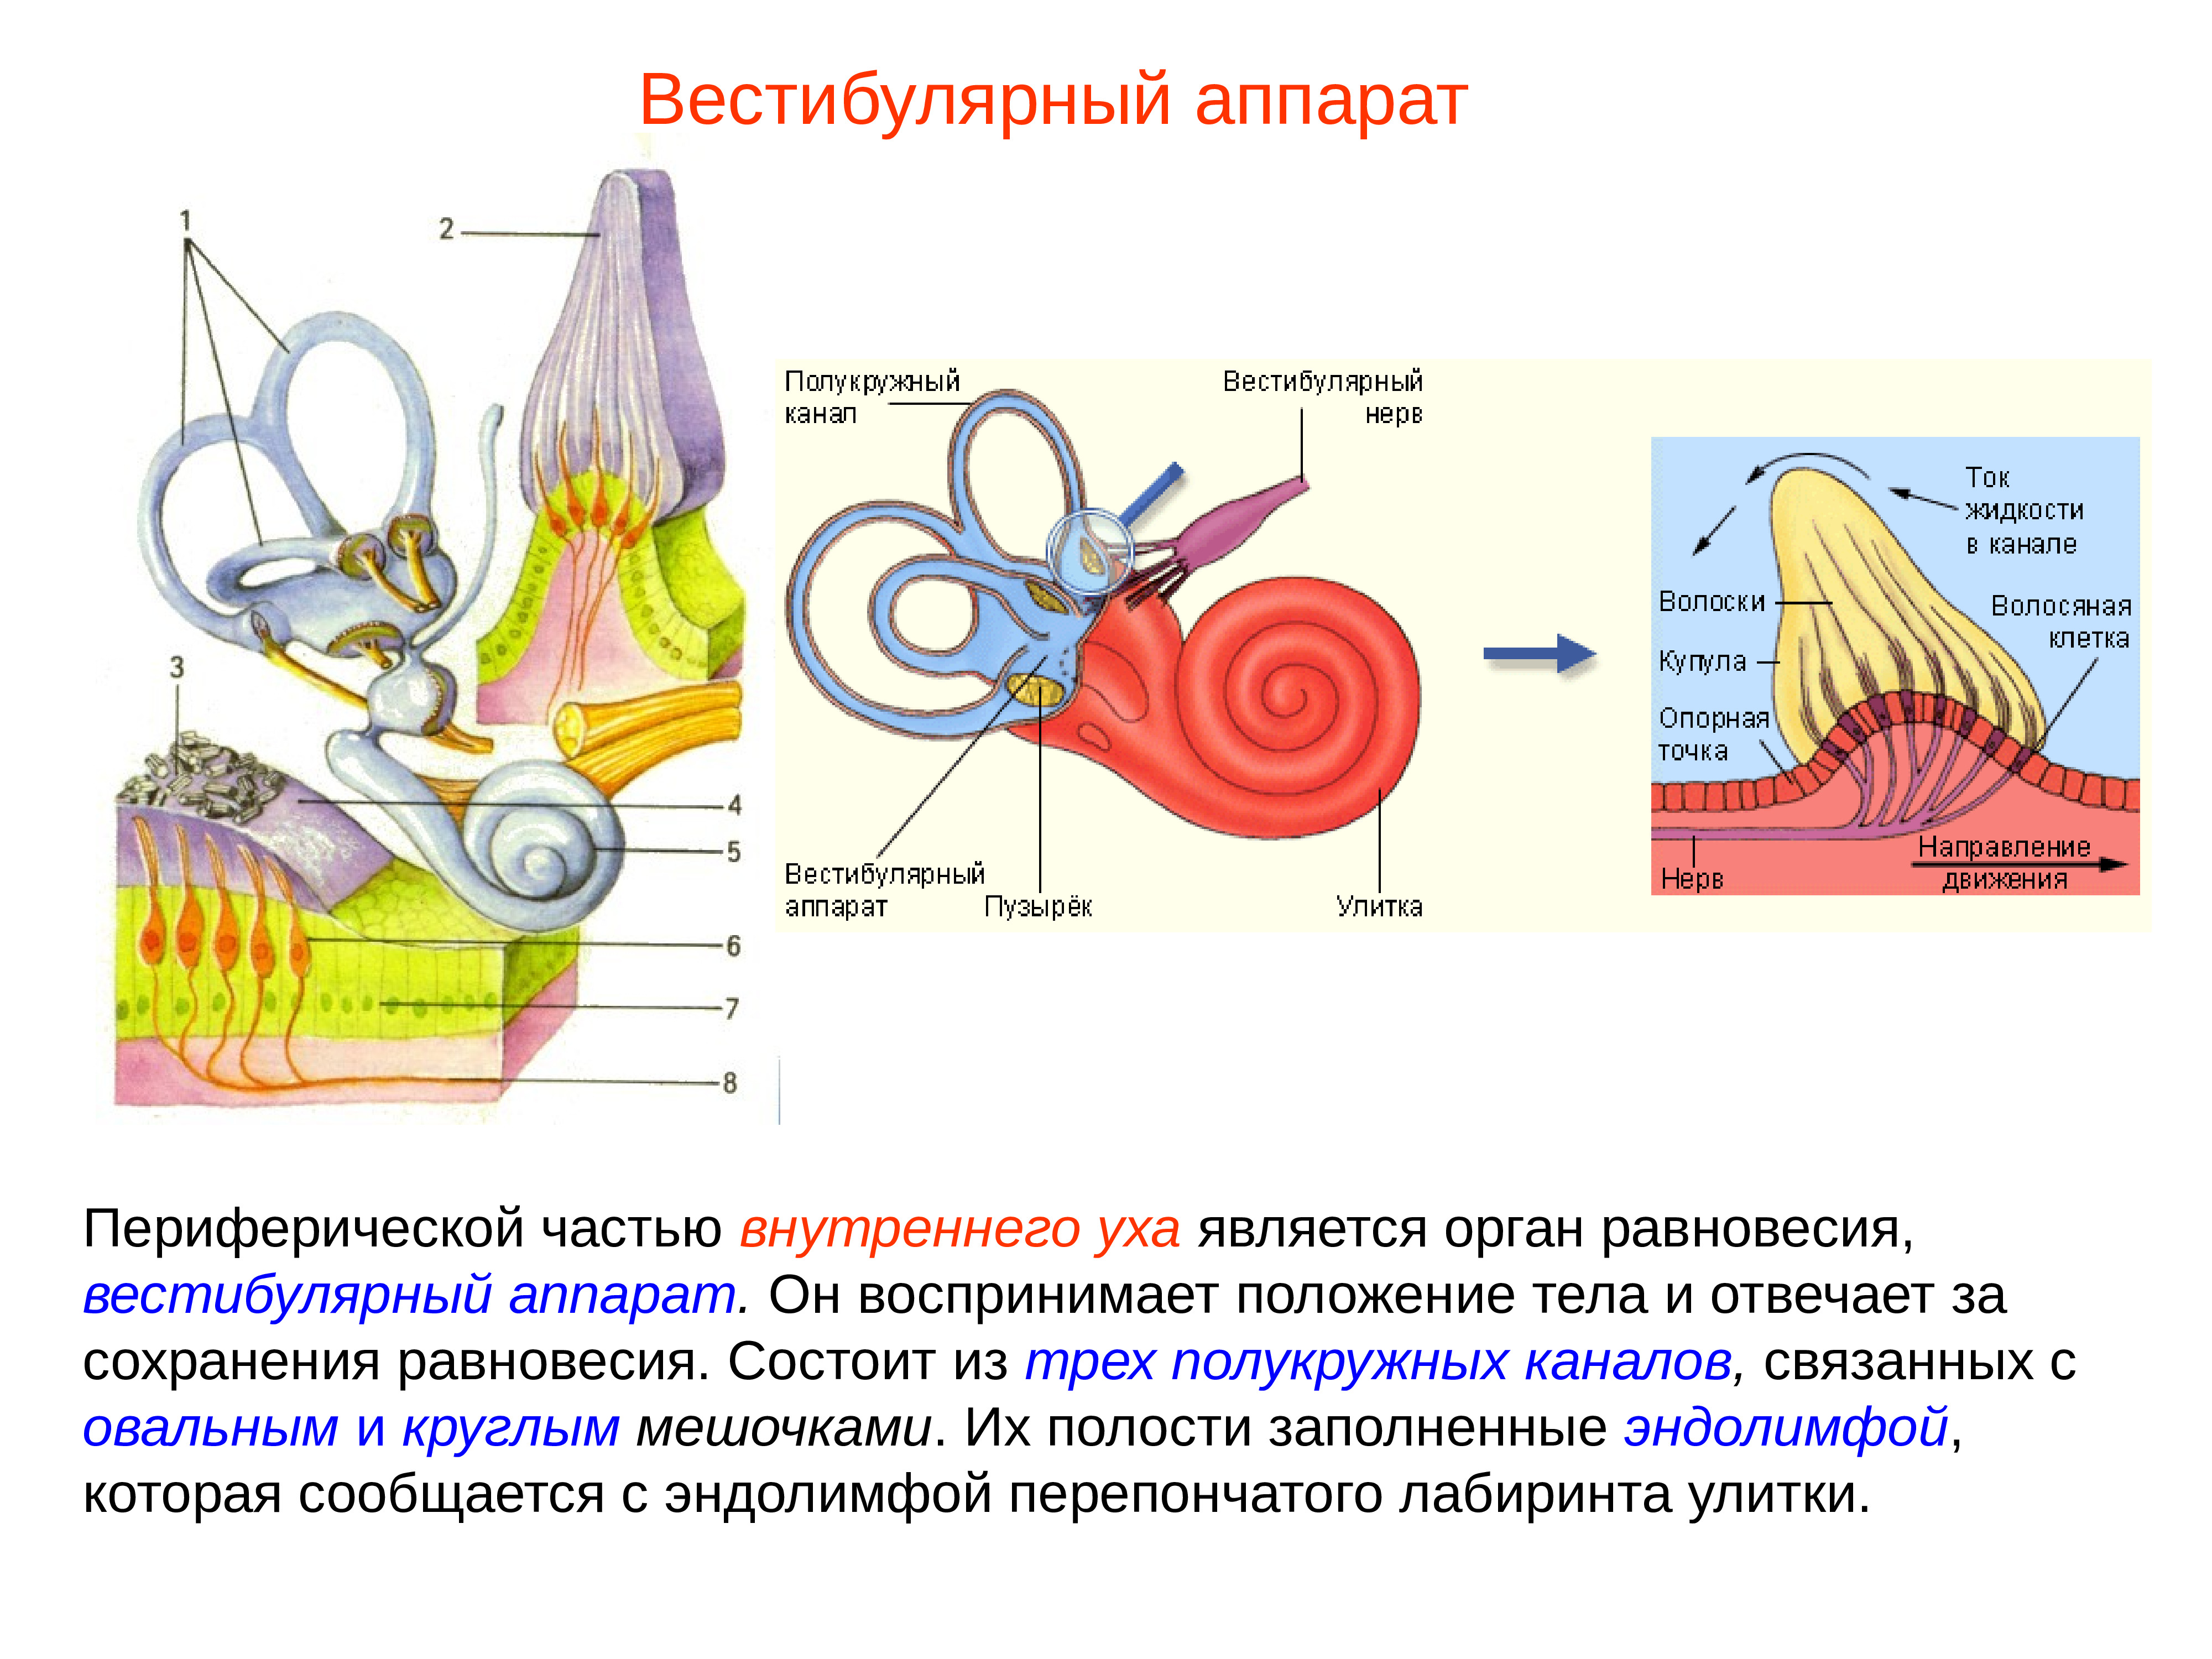 Вестибулярный аппарат в ухе человека. Внутреннее ухо вестибулярный анализатор анатомия. Строение строение вестибулярного аппарата. Полукружные каналы внутреннего уха анатомия. Схема периферического отдела вестибулярного анализатора.